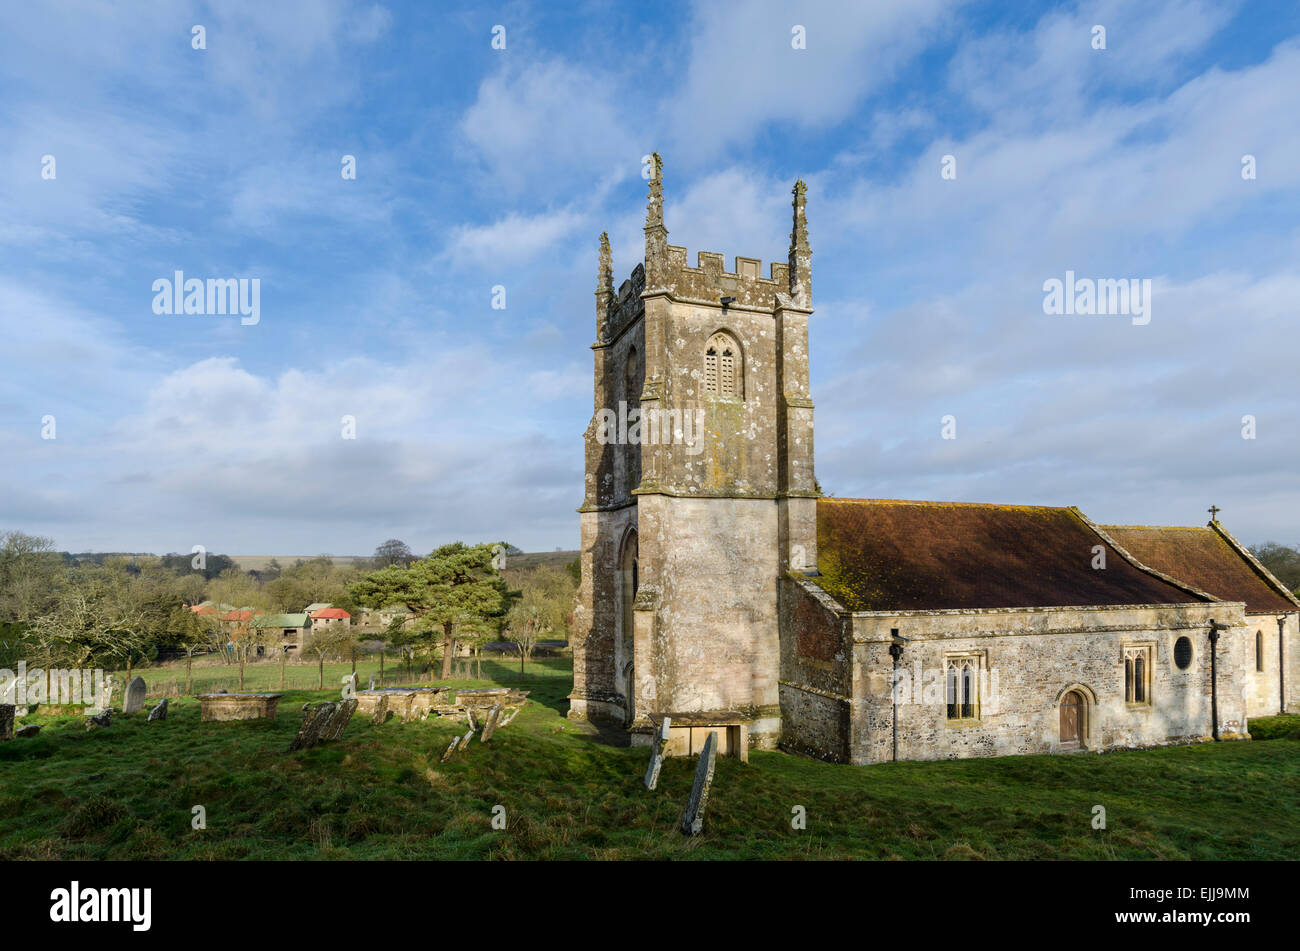 L'église paroissiale de St Giles dans le village fantôme de Imber dans la plaine de Salisbury, Wiltshire, Angleterre, Royaume-Uni. Banque D'Images